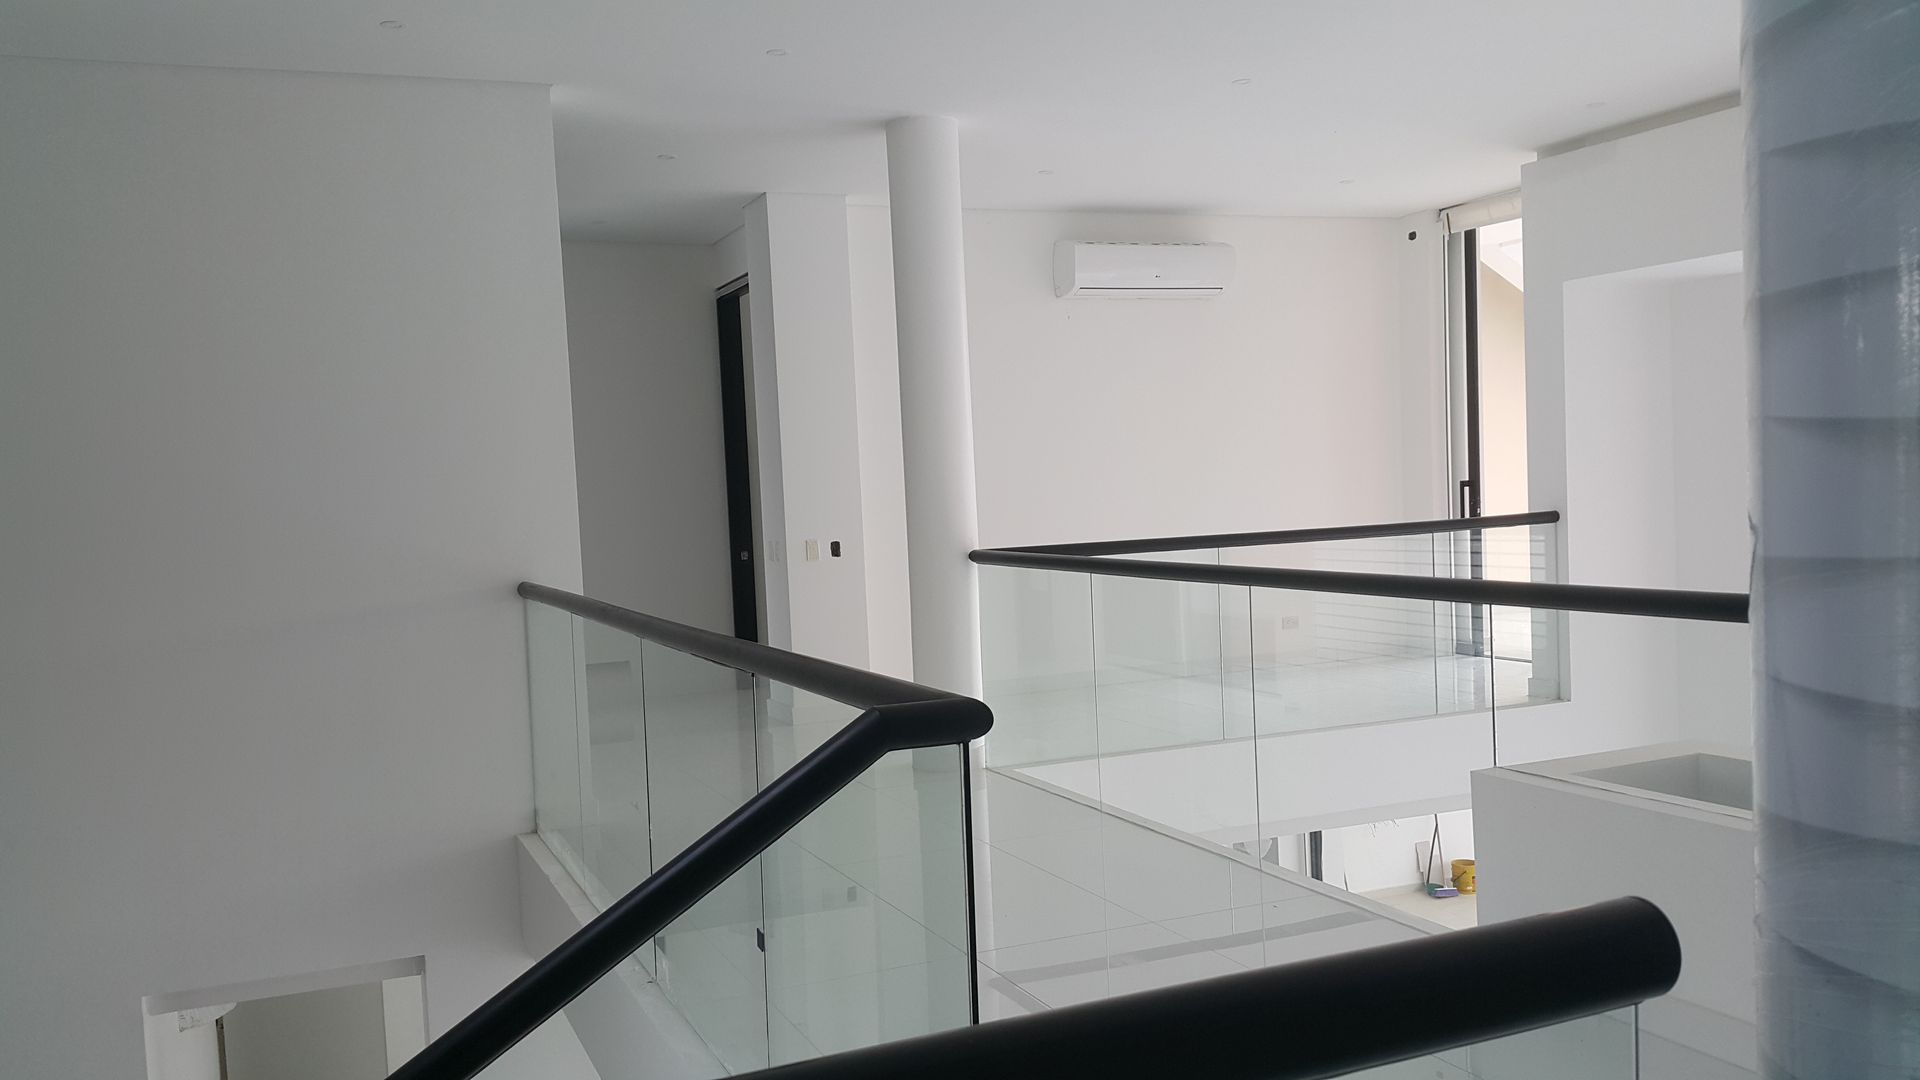 Puente comunicación segundo piso. homify Pasillos, vestíbulos y escaleras de estilo moderno Concreto Accesorios y decoración